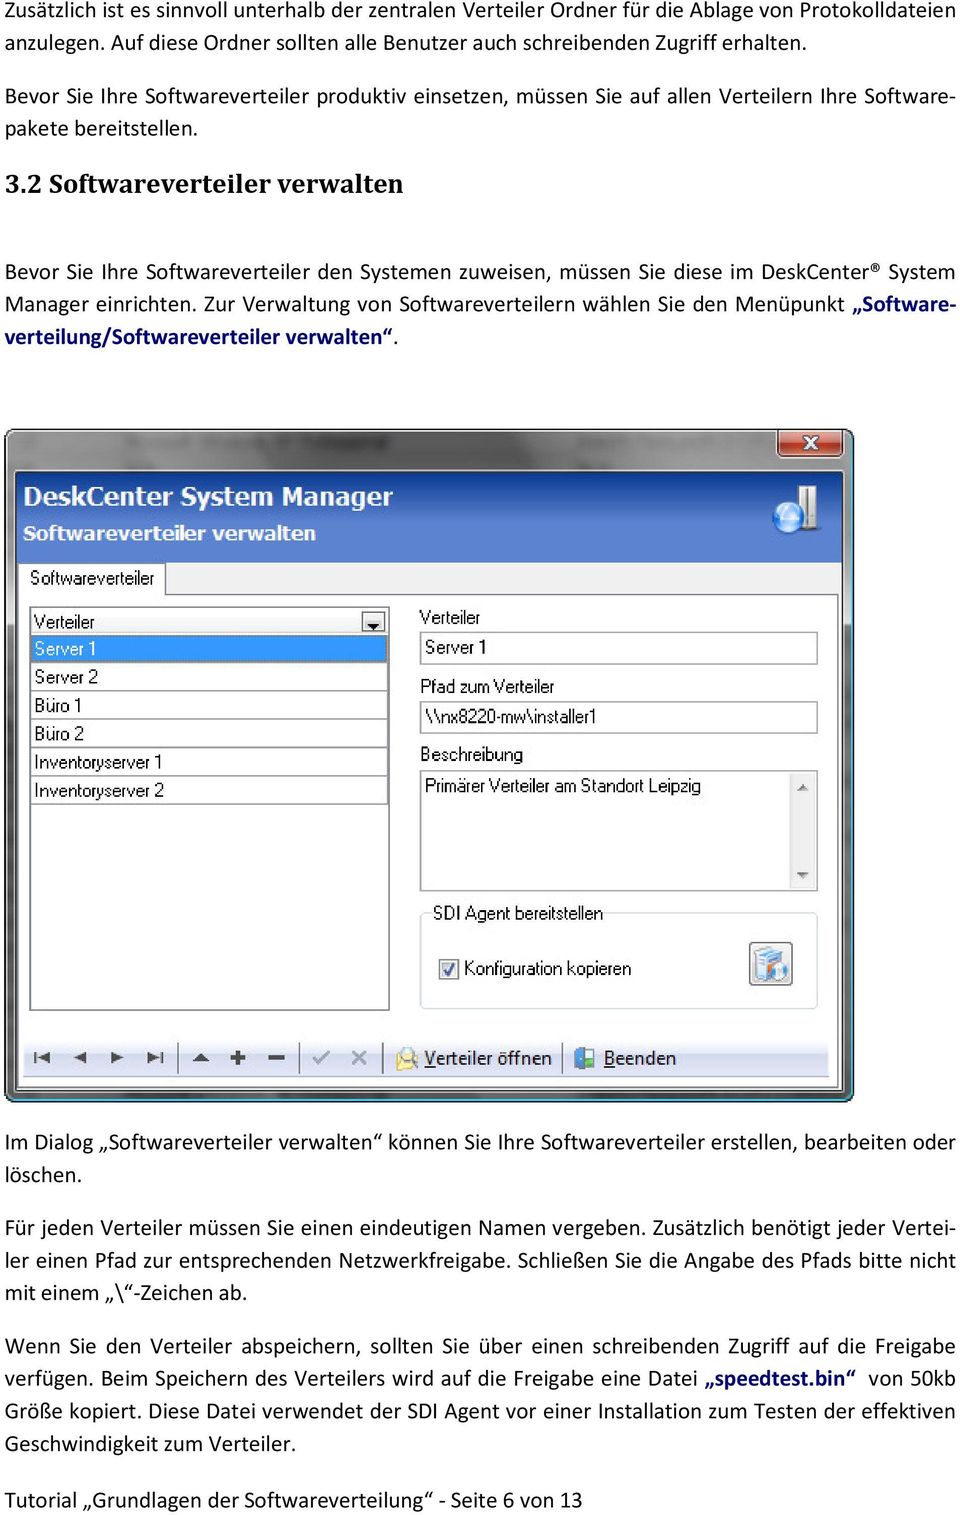 2 Softwareverteiler verwalten Bevor Sie Ihre Softwareverteiler den Systemen zuweisen, müssen Sie diese im DeskCenter System Manager einrichten.